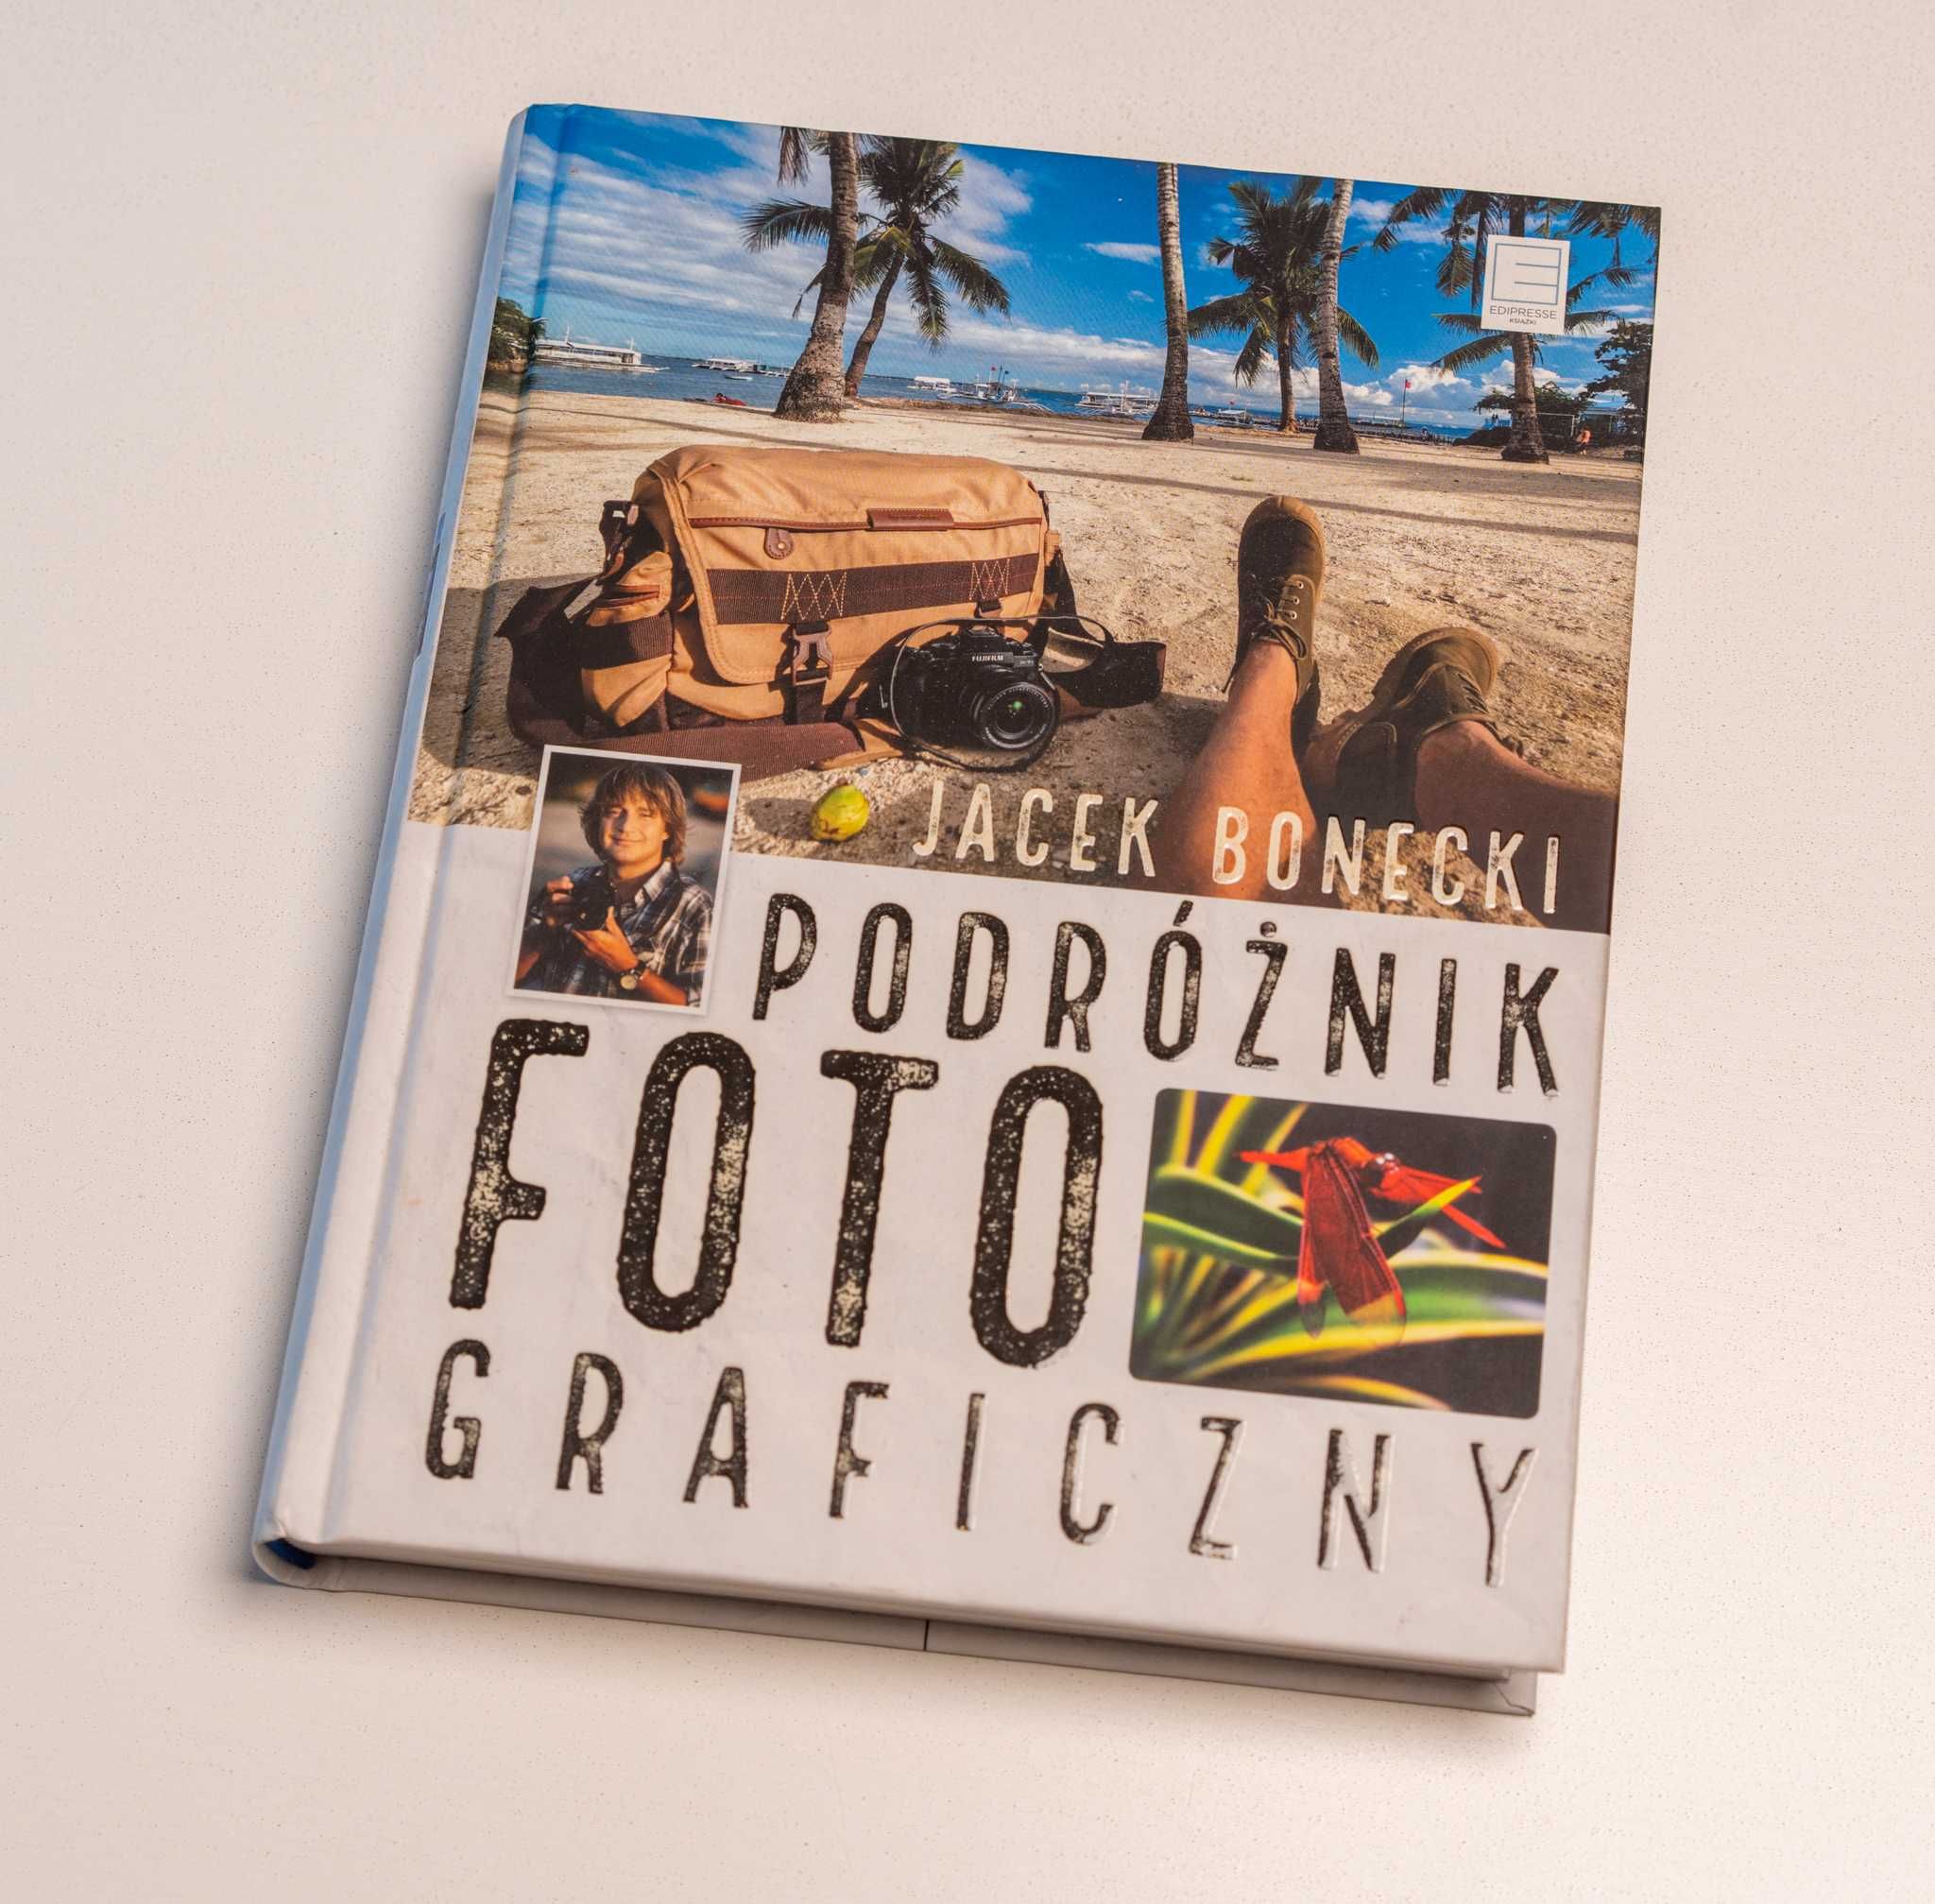 Podróżnik fotograficzny - Jacek Bonecki (książka, twarda oprawa)